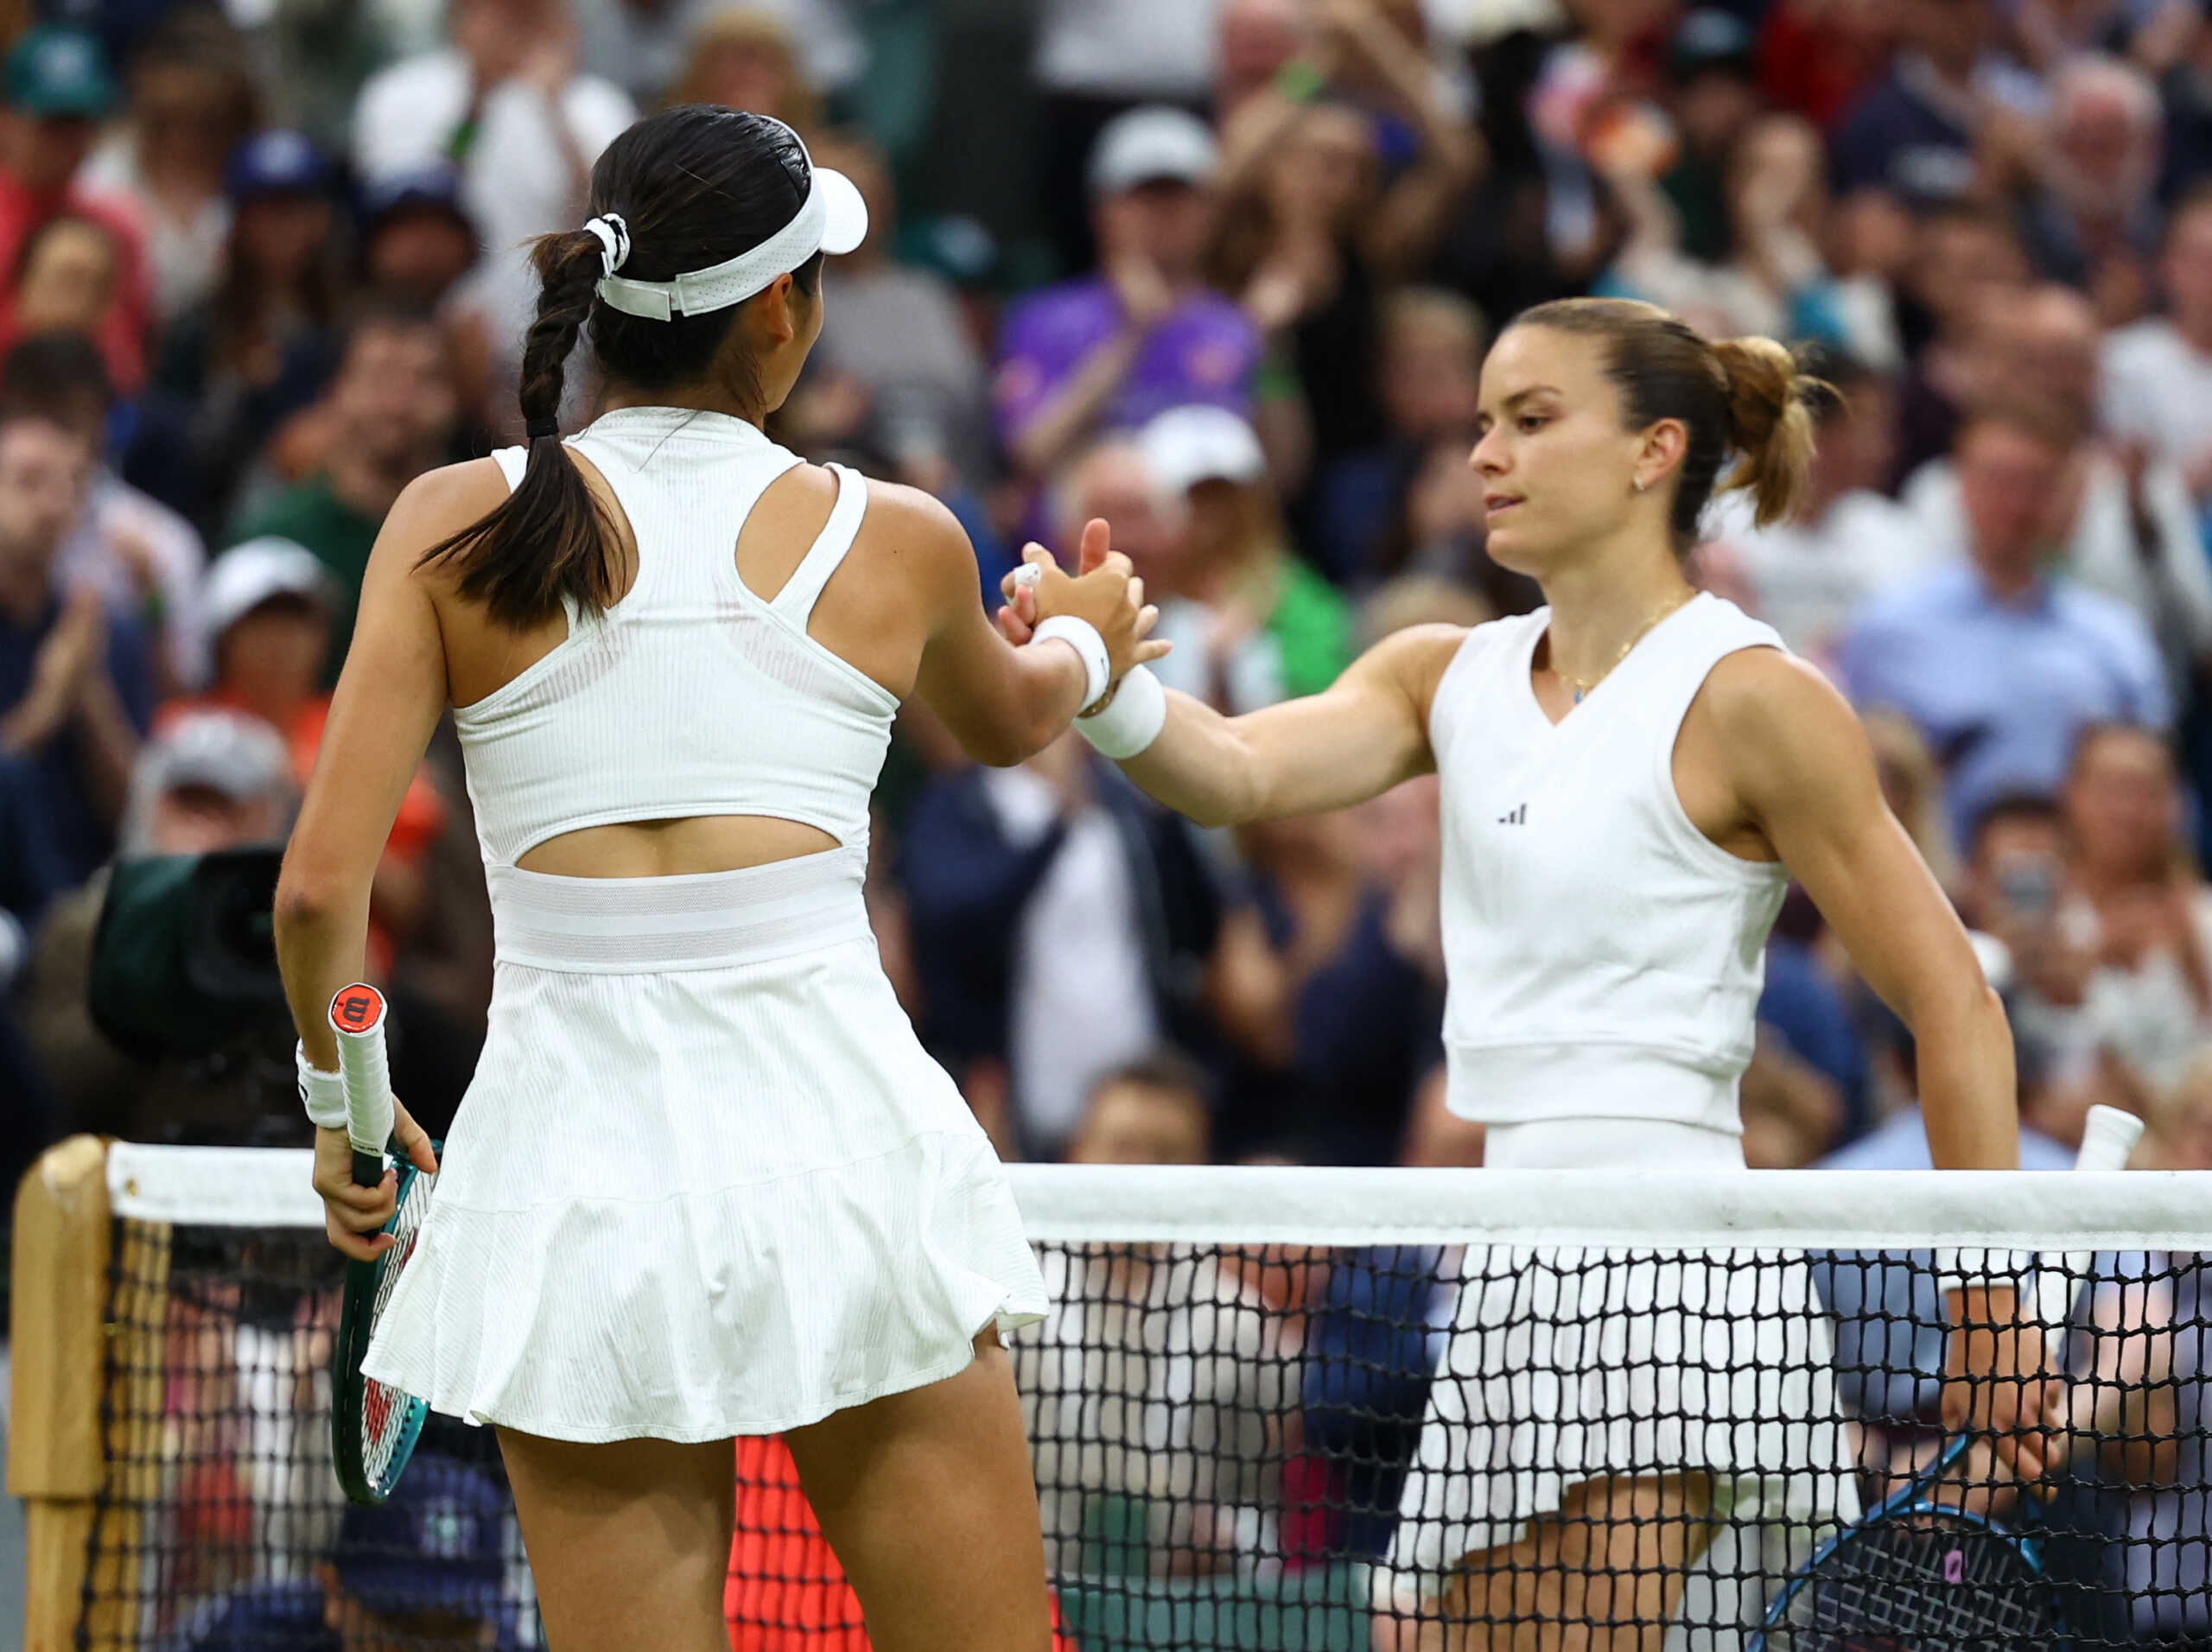 Μαρία Σάκκαρη μετά τον αποκλεισμό στο Wimbledon: «Πολλοί άνθρωποι με κριτικάρουν για το επίπεδό μου, αλλά δεν με νοιάζει»